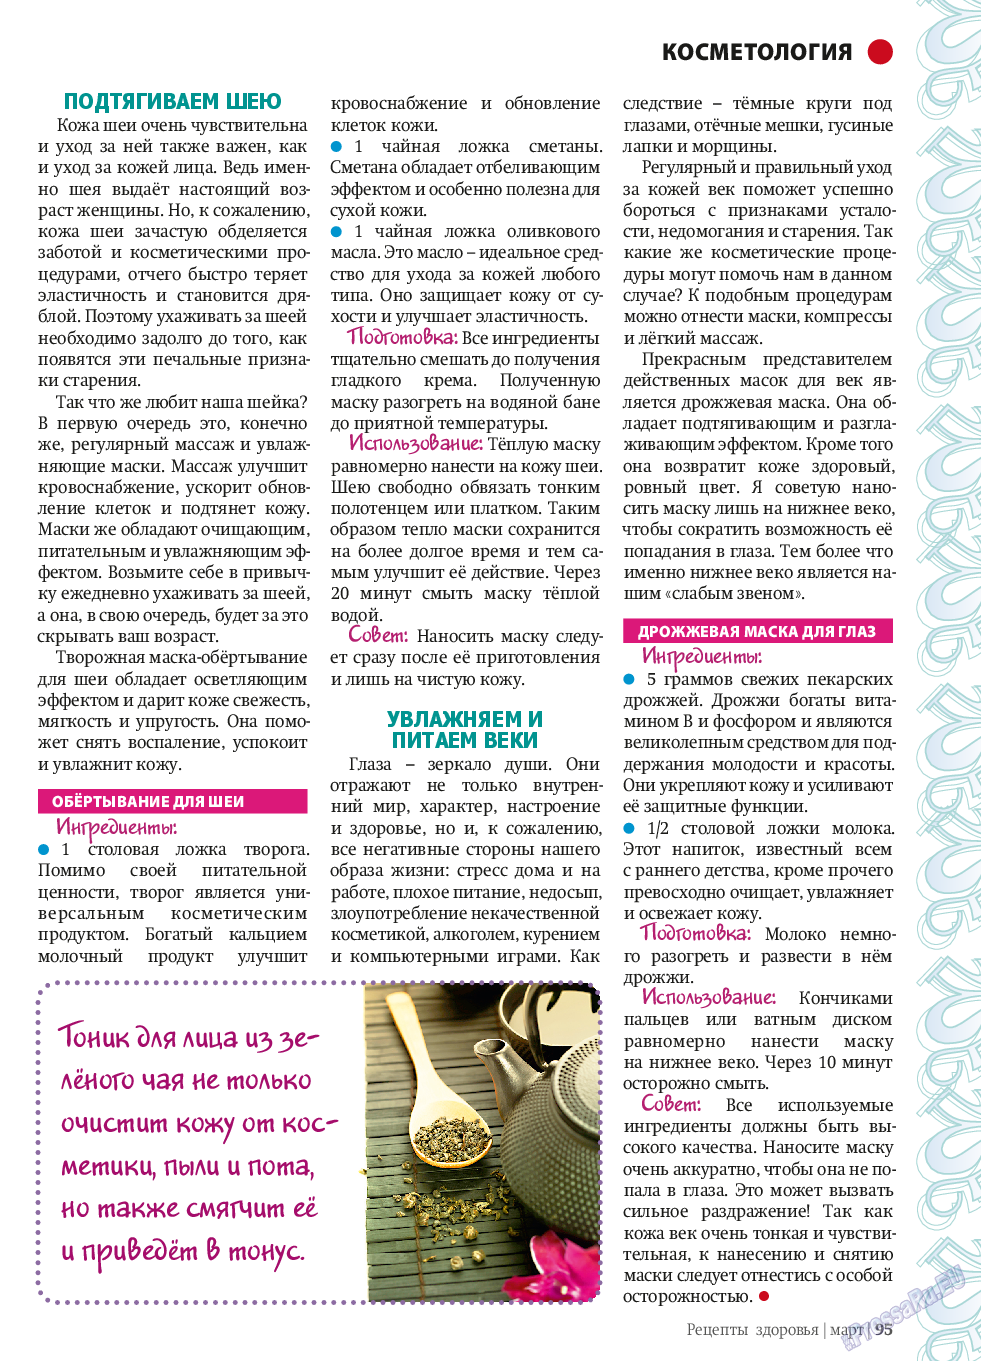 Рецепты здоровья, журнал. 2014 №58 стр.95